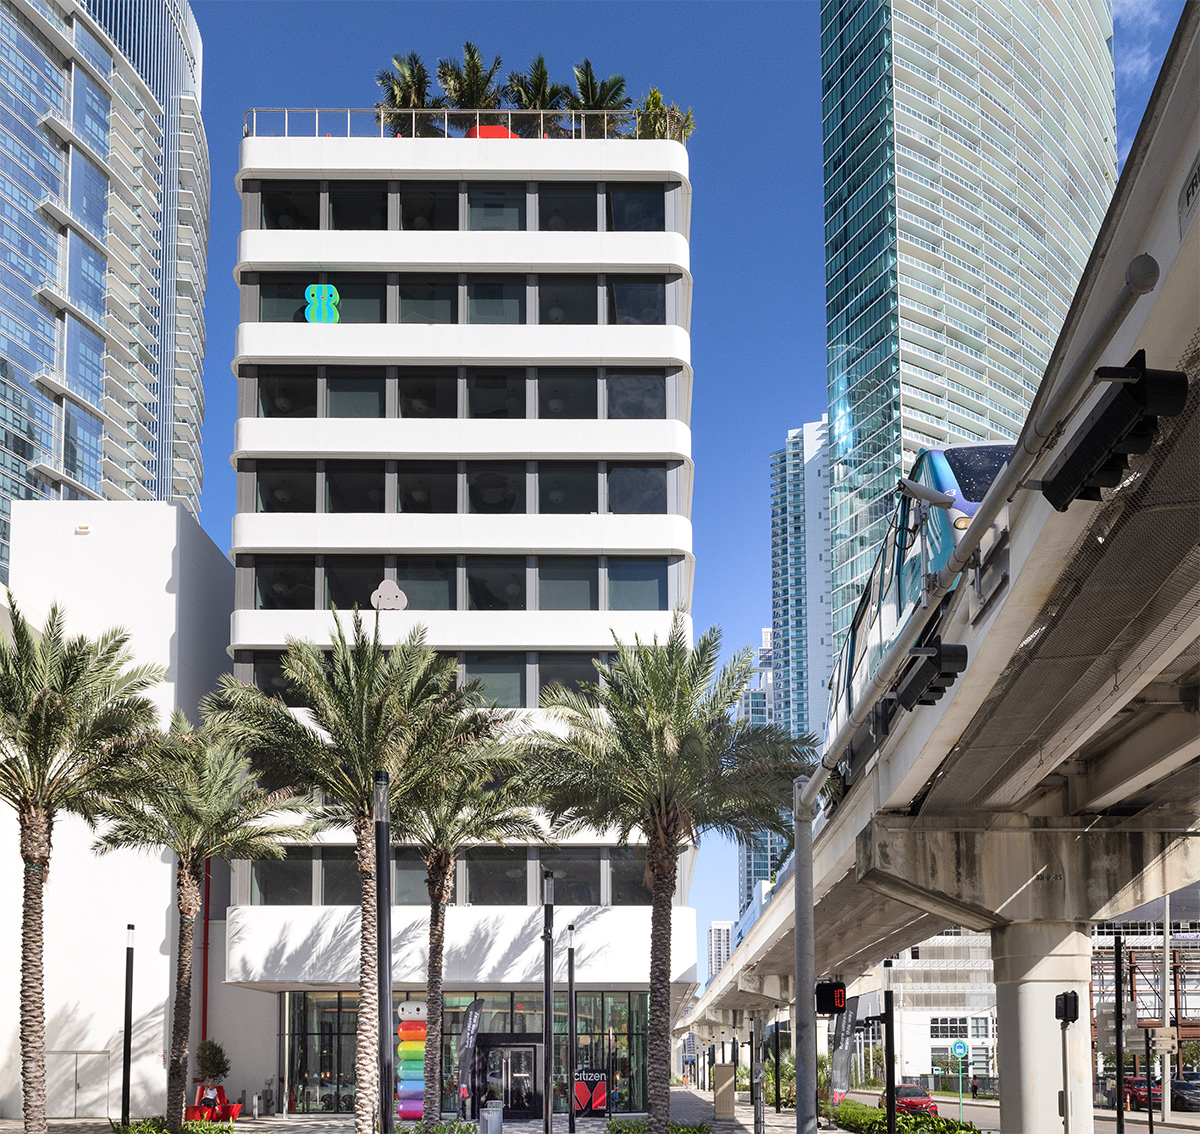 Architectural view of the Citizen M hotel in Miami, FL.